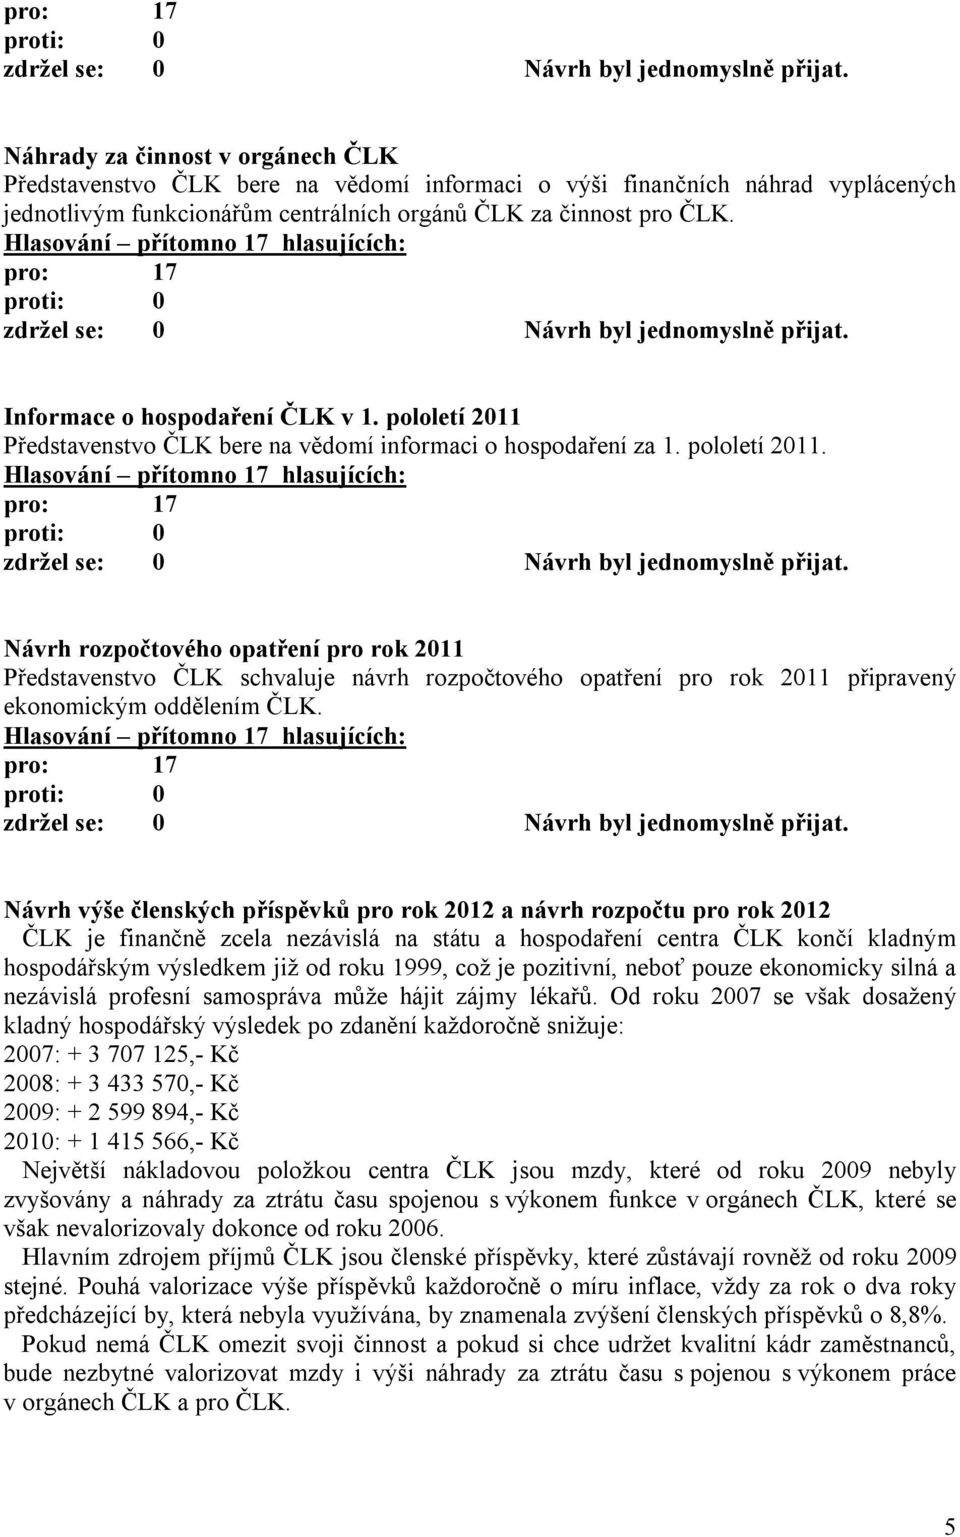 Představenstvo ČLK bere na vědomí informaci o hospodaření za 1. pololetí 2011.